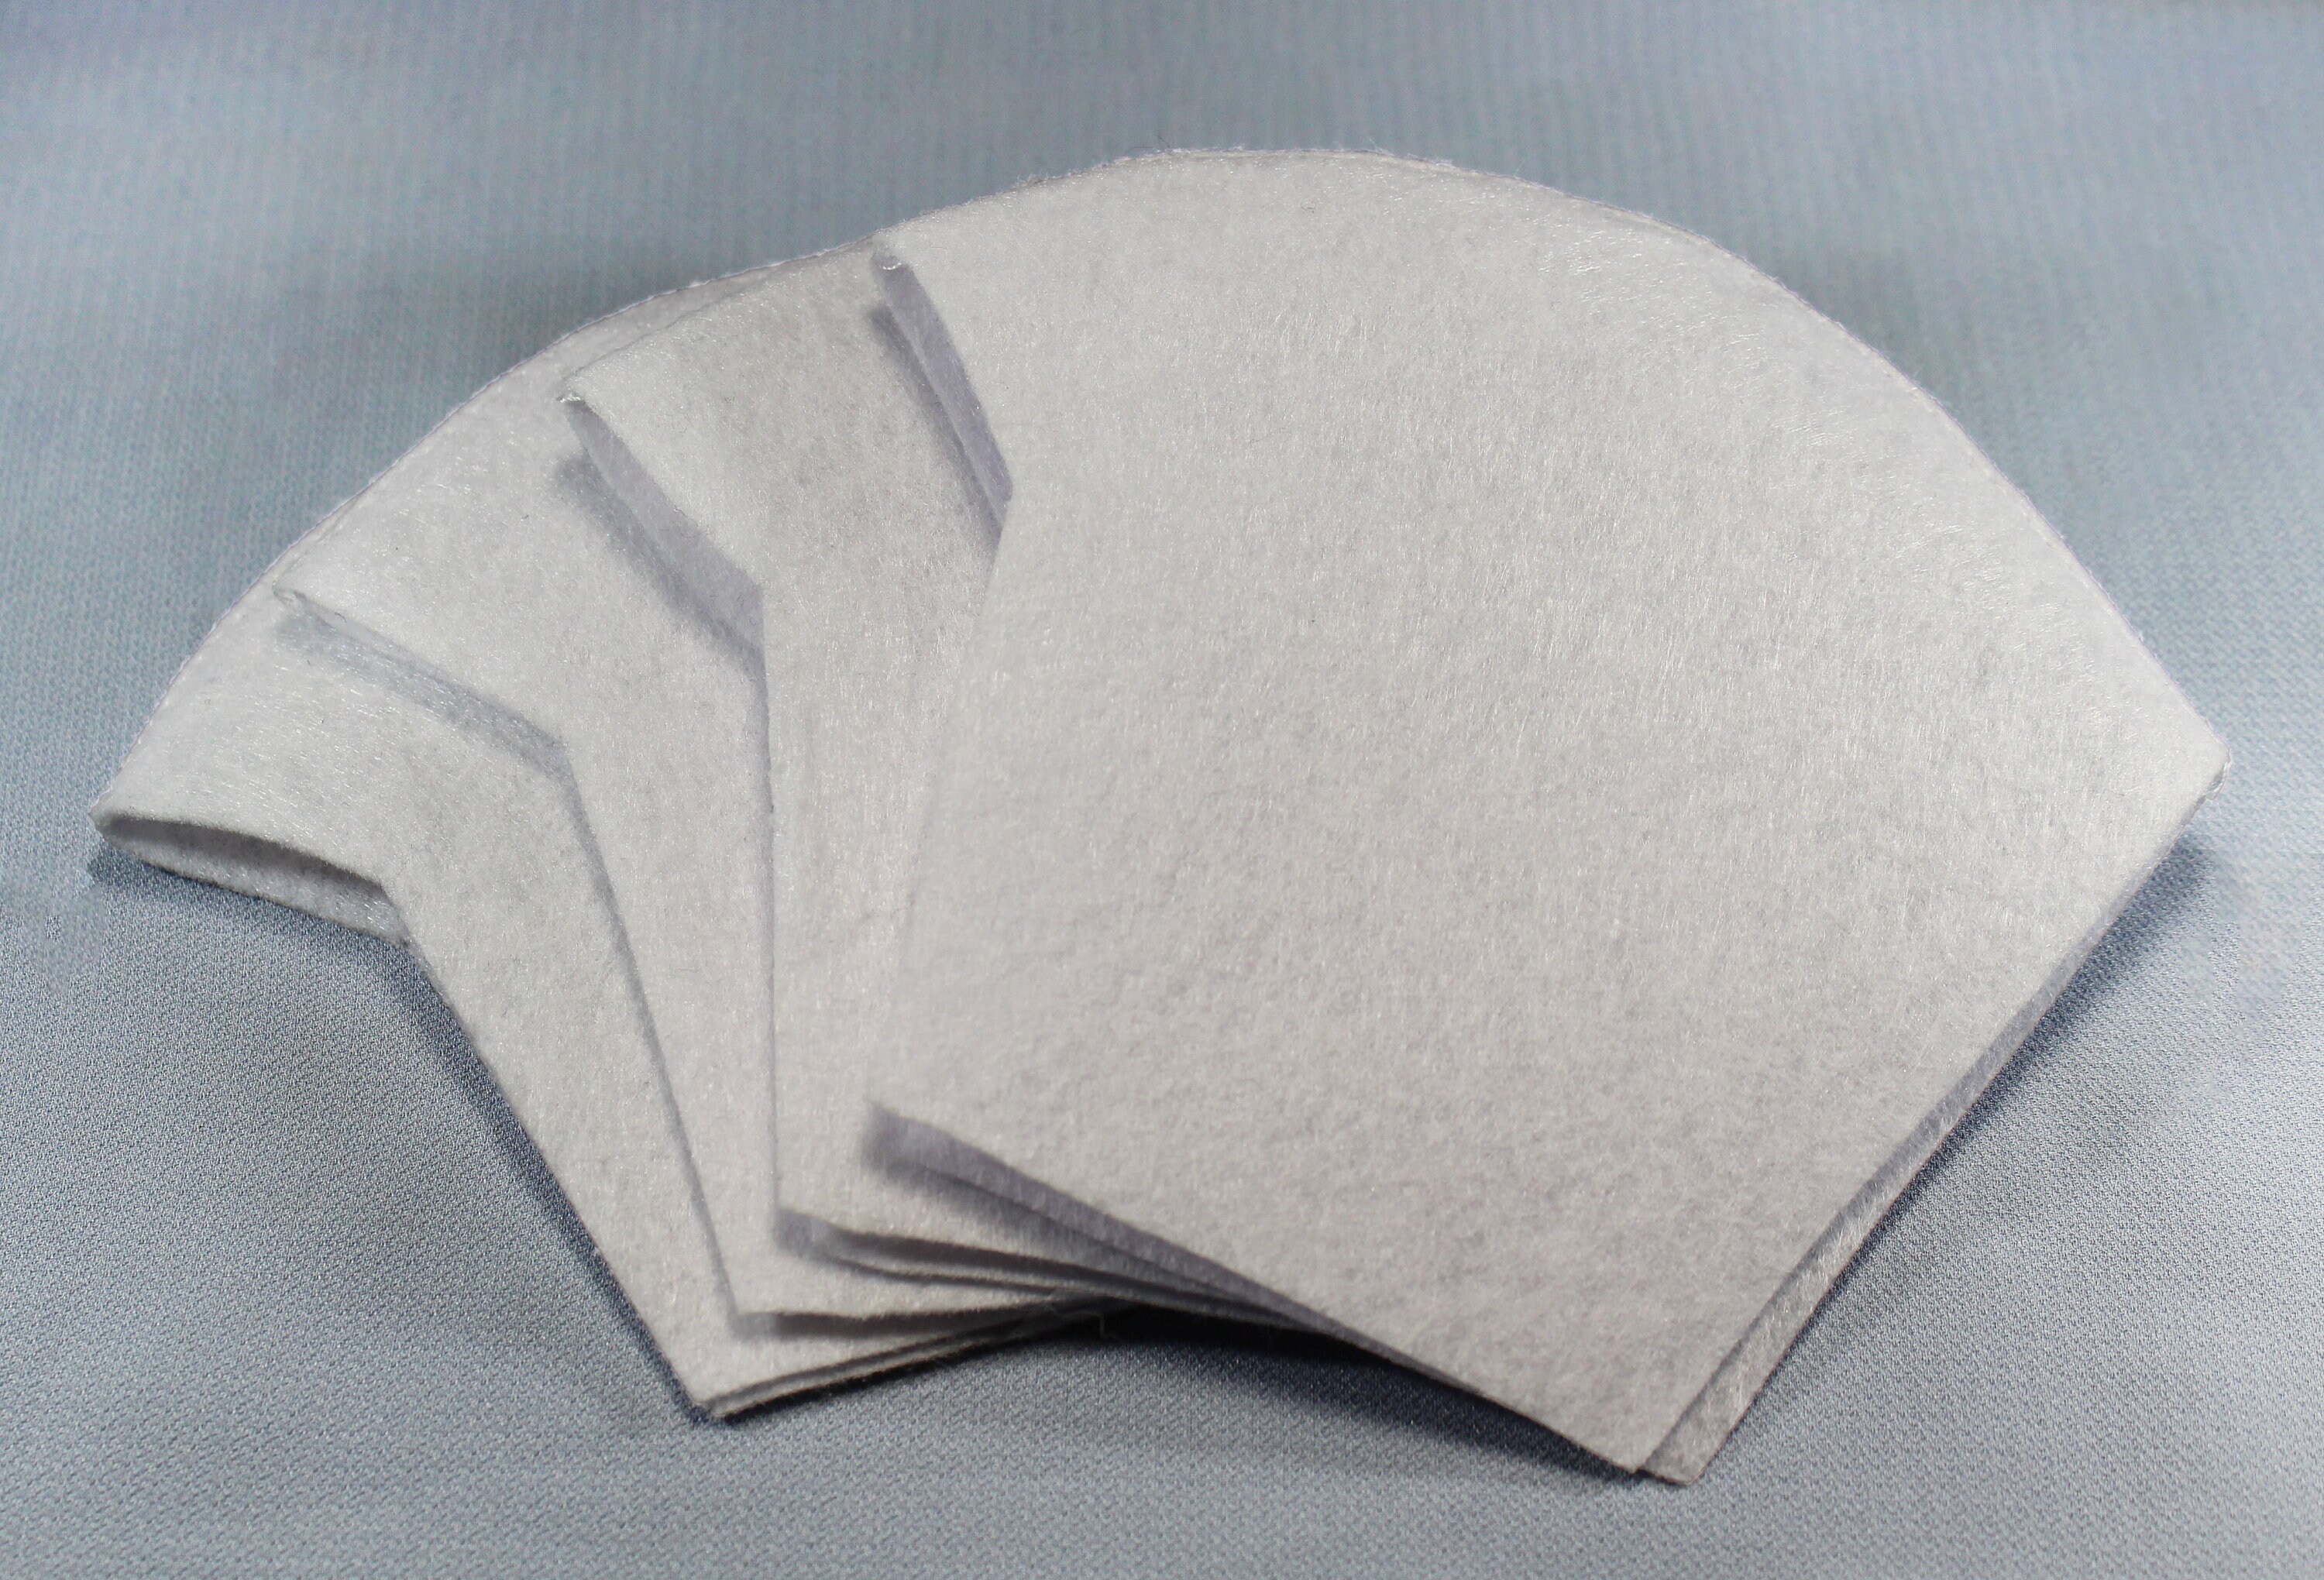 Filter Cotton-Polyester Blend - 4 Packs For Pocket Masks